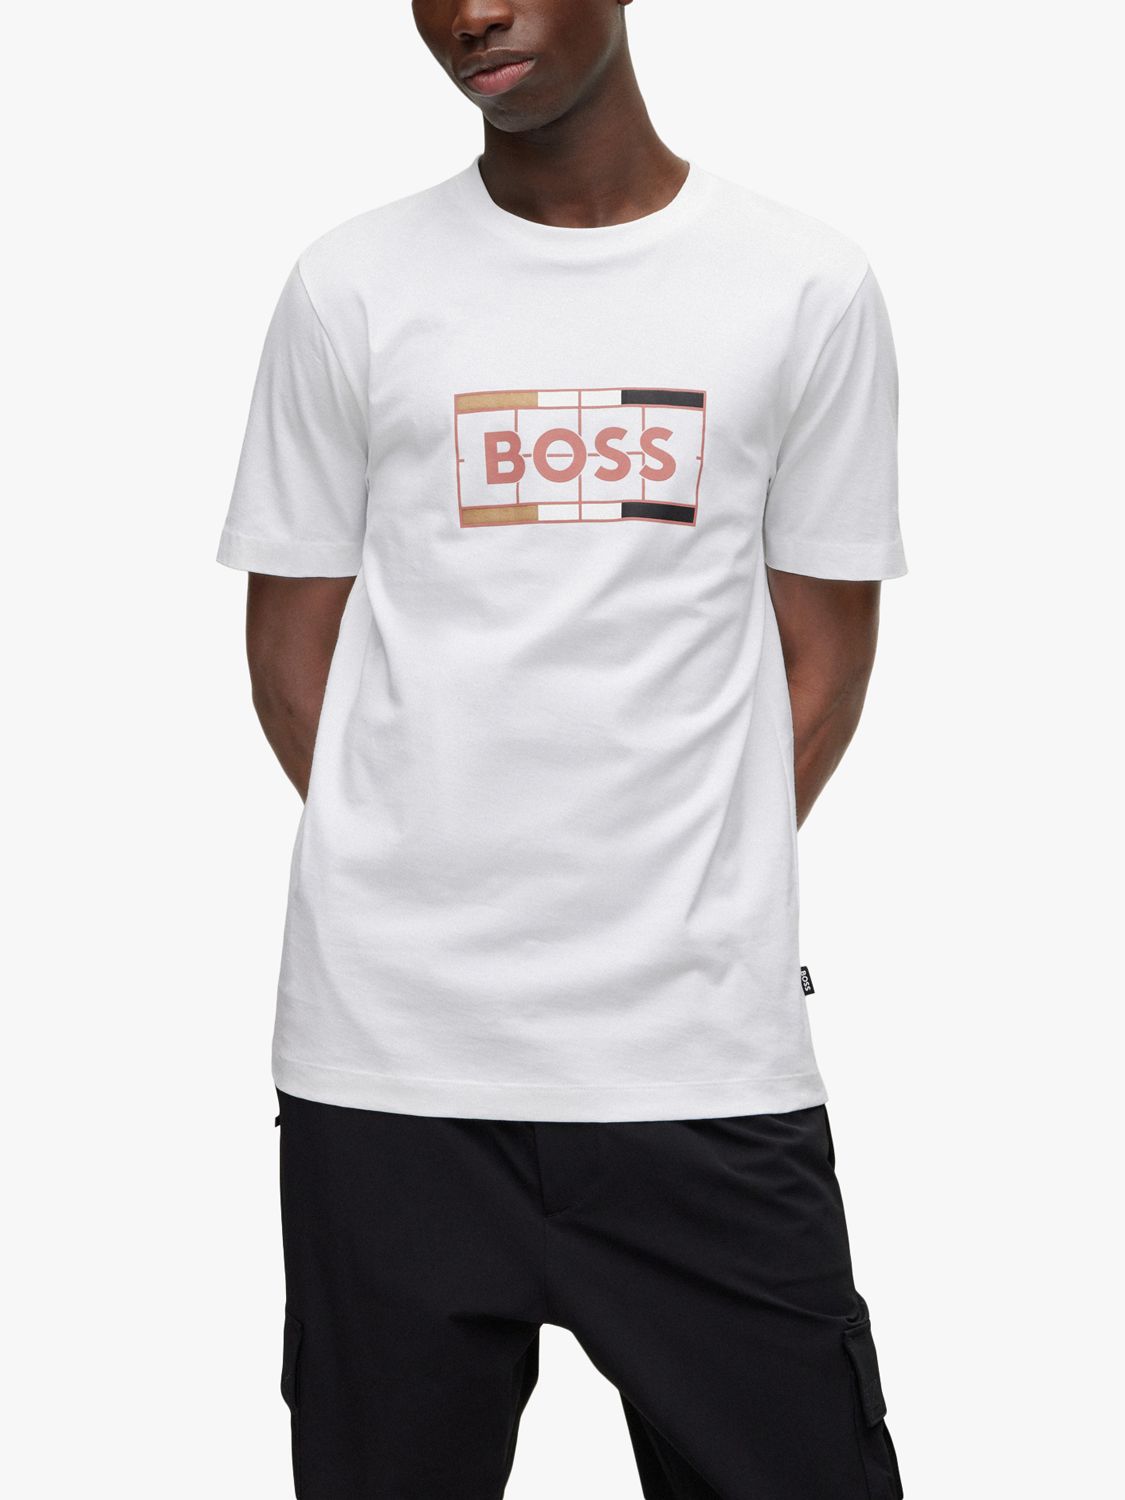 BOSS Tessler 186 Graphic Logo T-Shirt, White/Multi